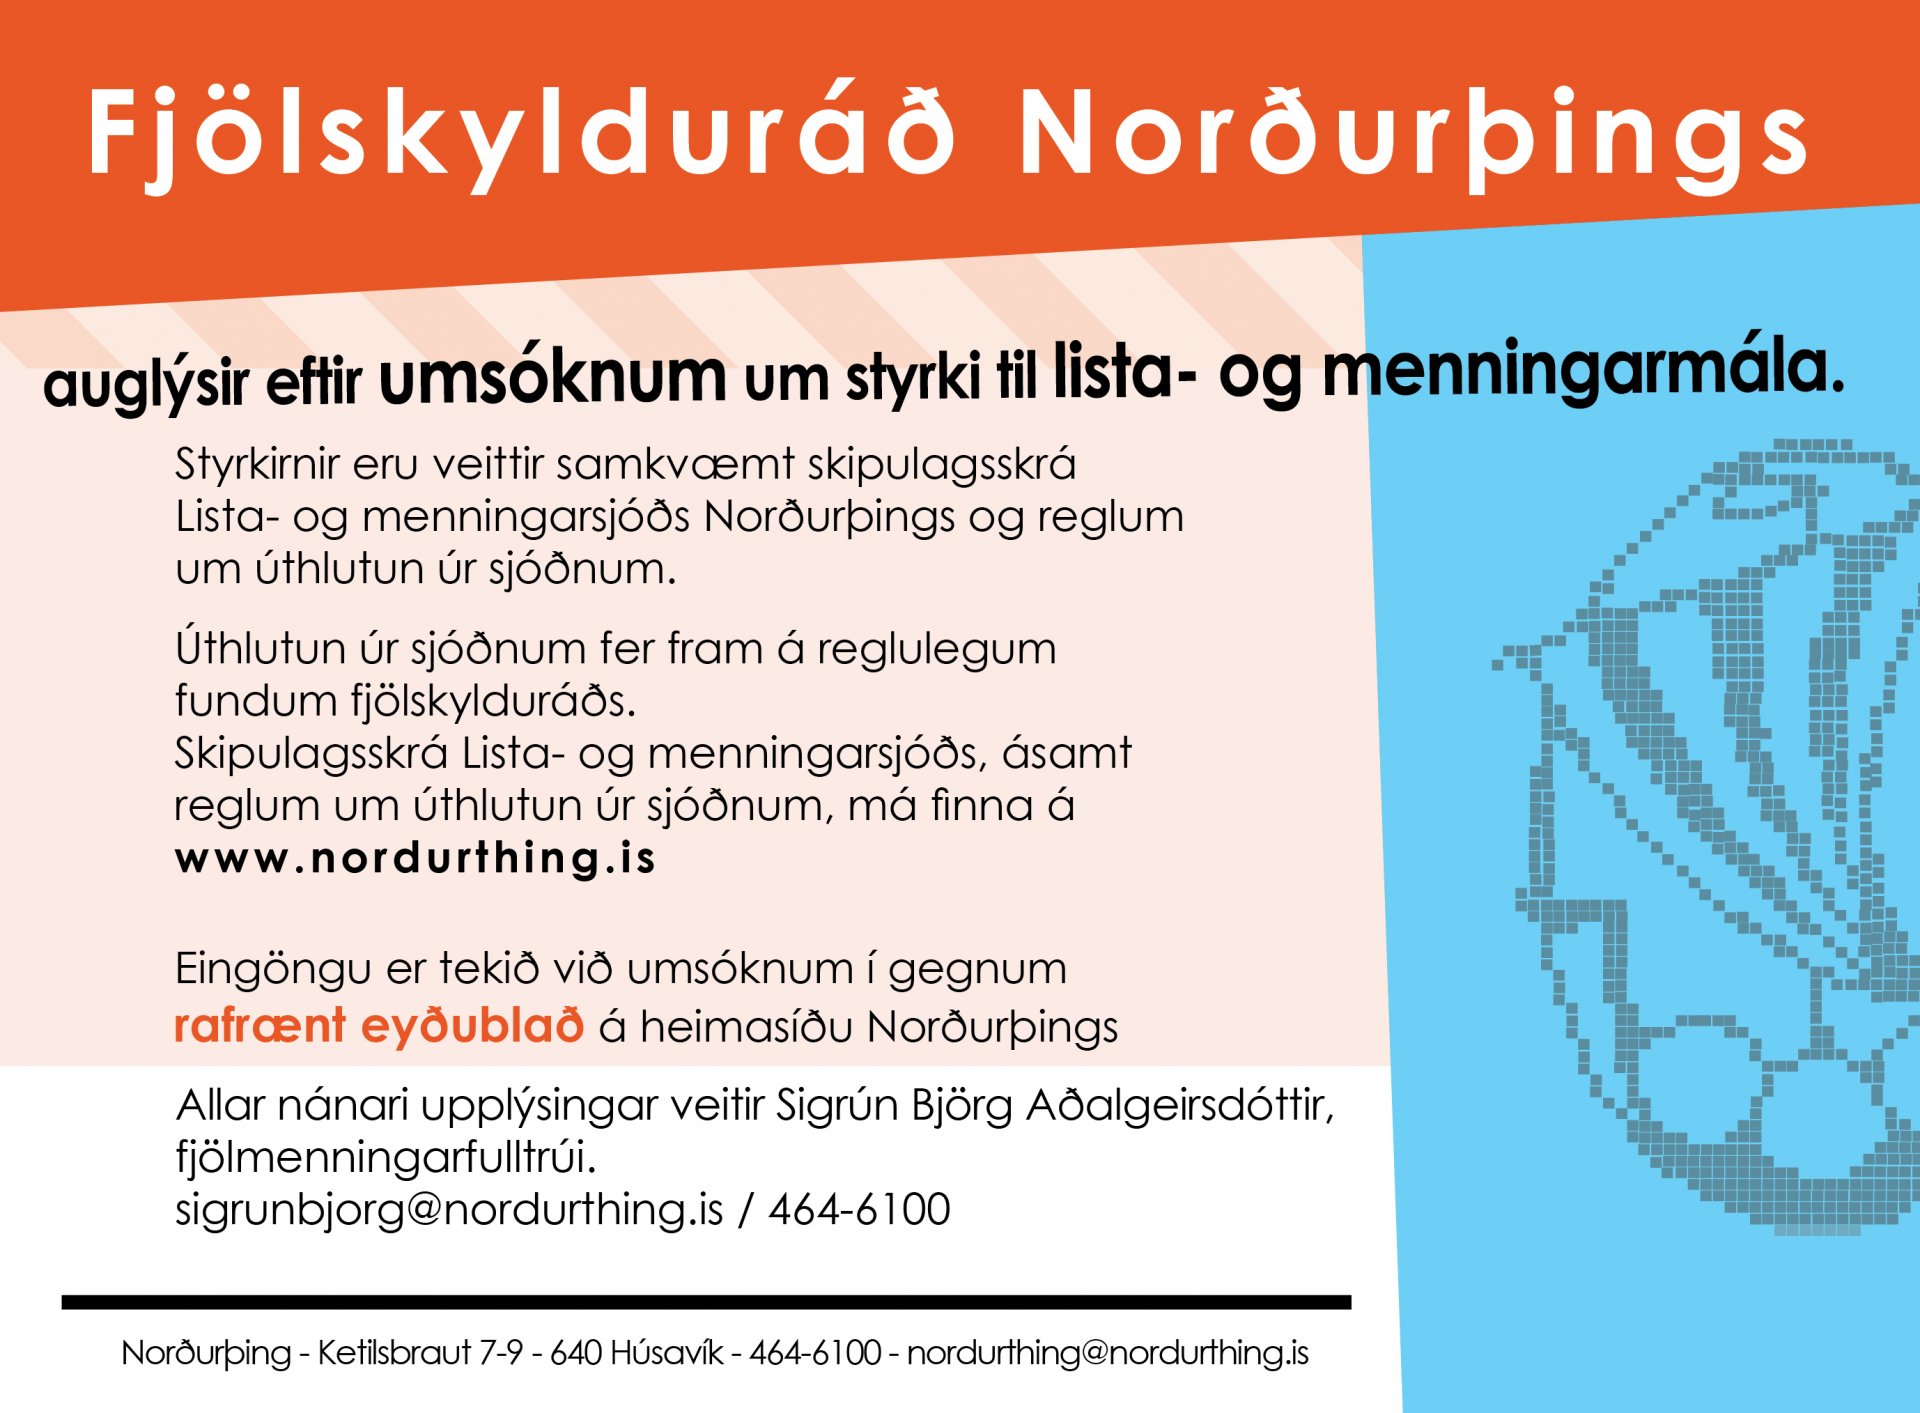 Lista- og menningarsjóður Norðurþings